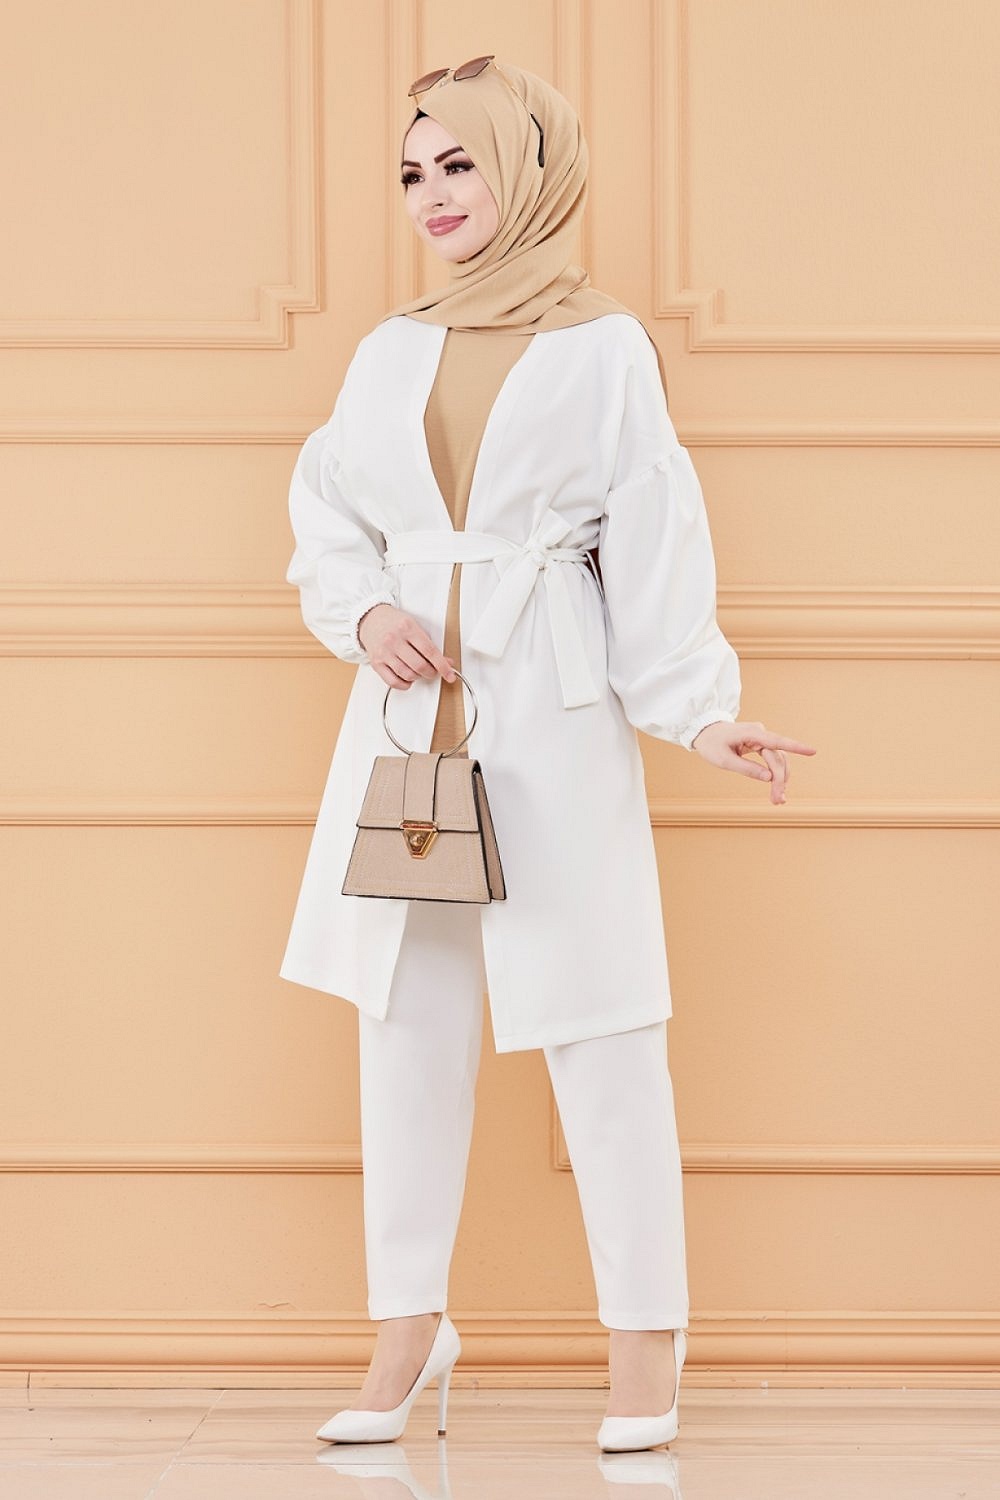 Ensemble femme : Veste et pantalon (Tenue hijab classique) - Couleur blanc